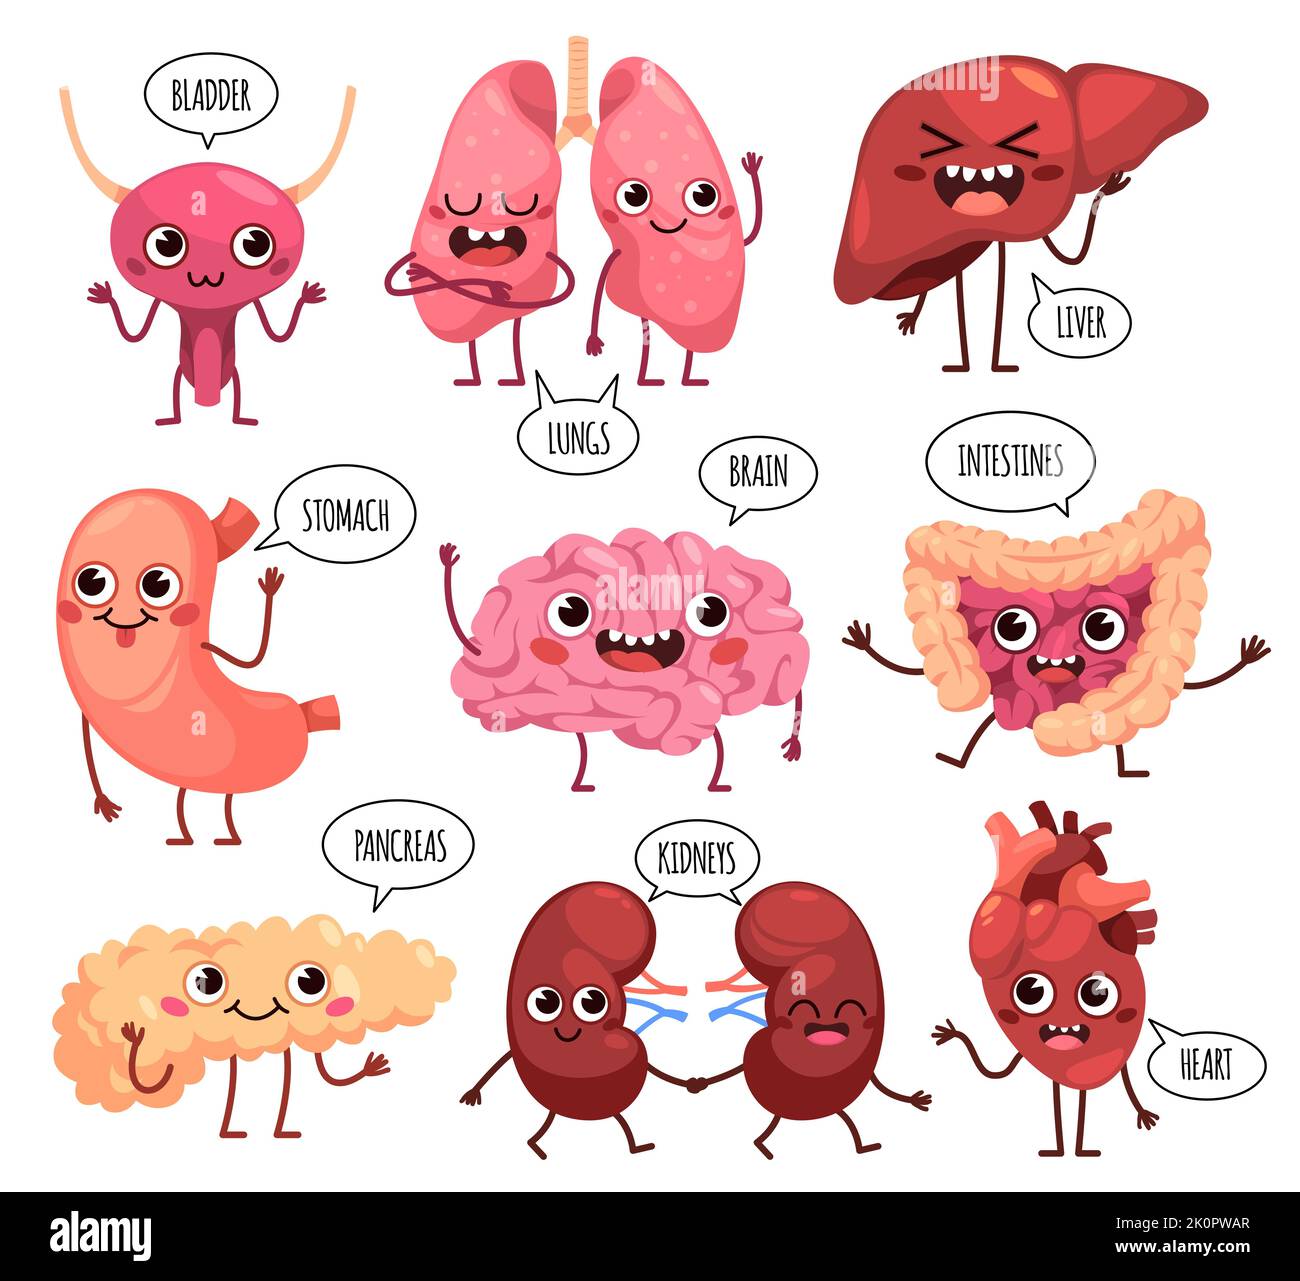 Poster Anatomia del corpo umano - Cervello, polmoni, cuore, fegato,  intestino 